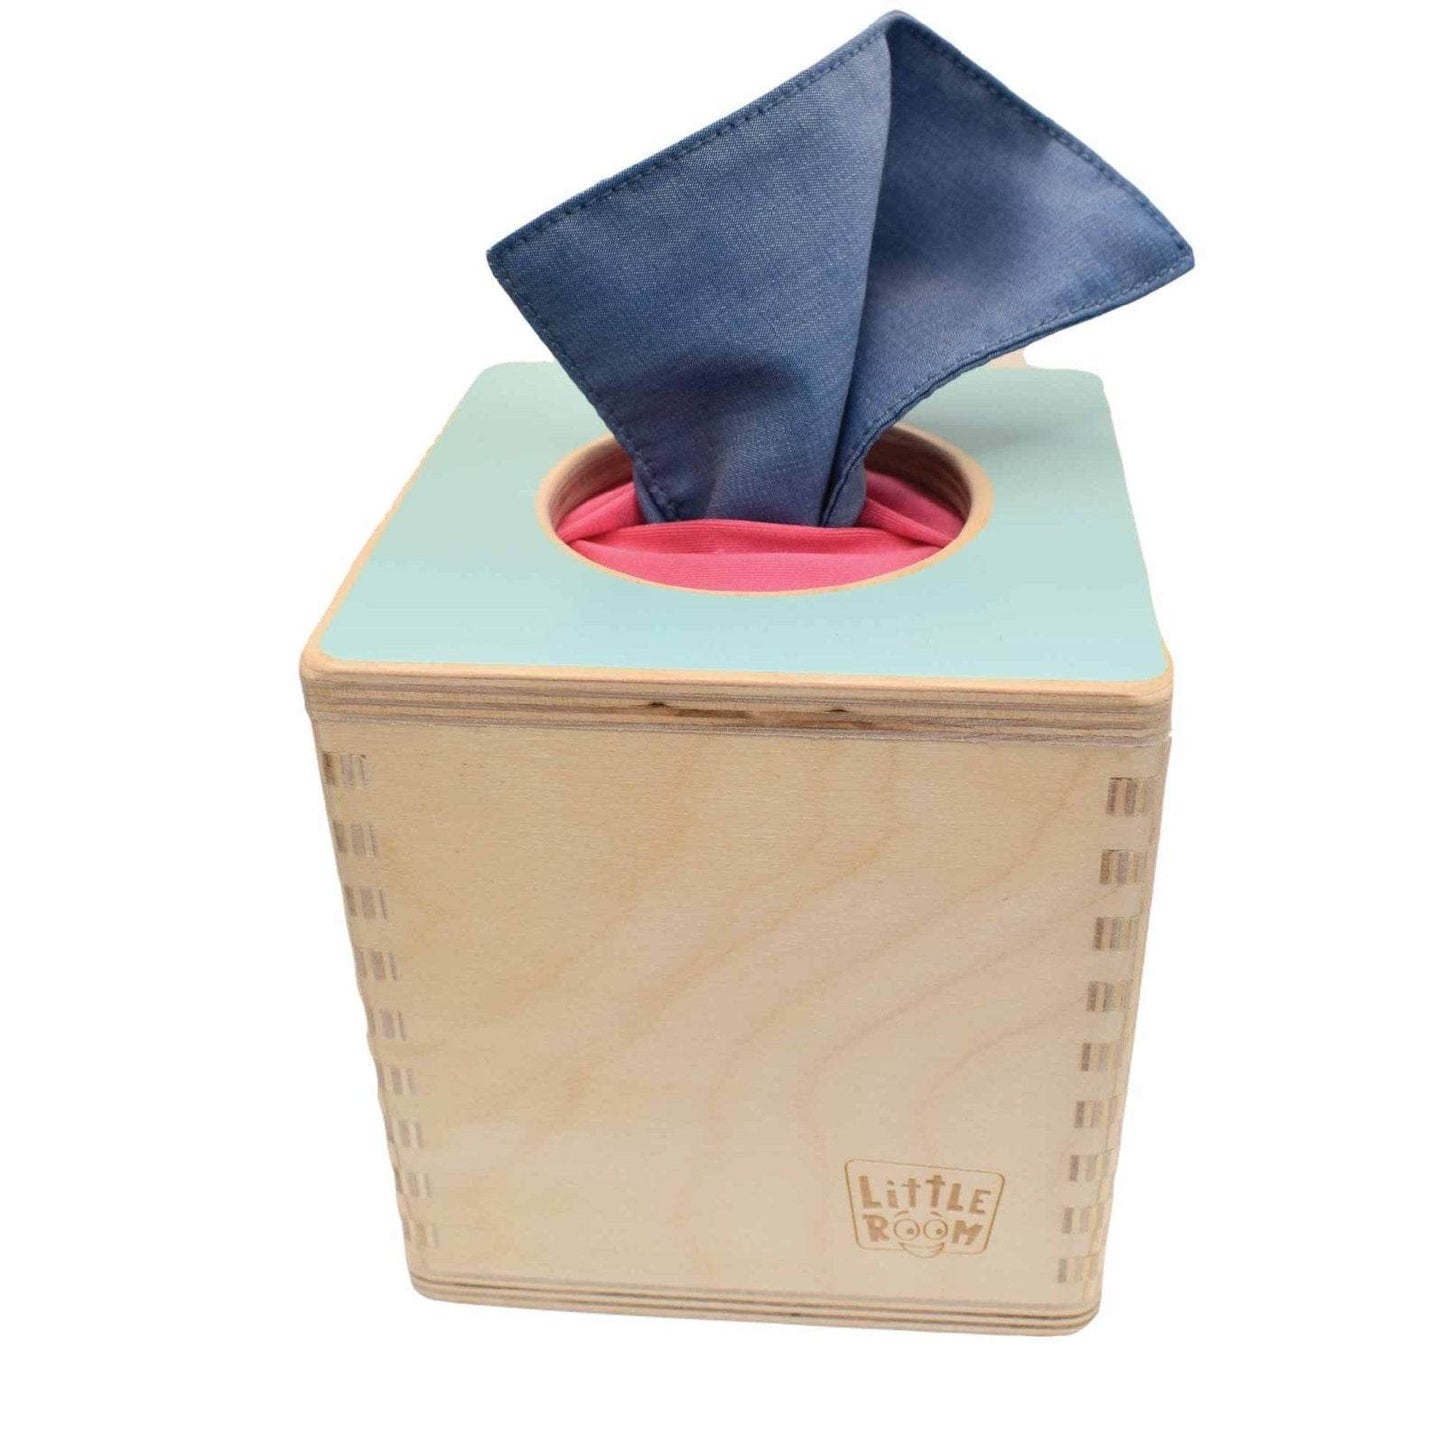 Montessori Tissue Box with a blue tissue